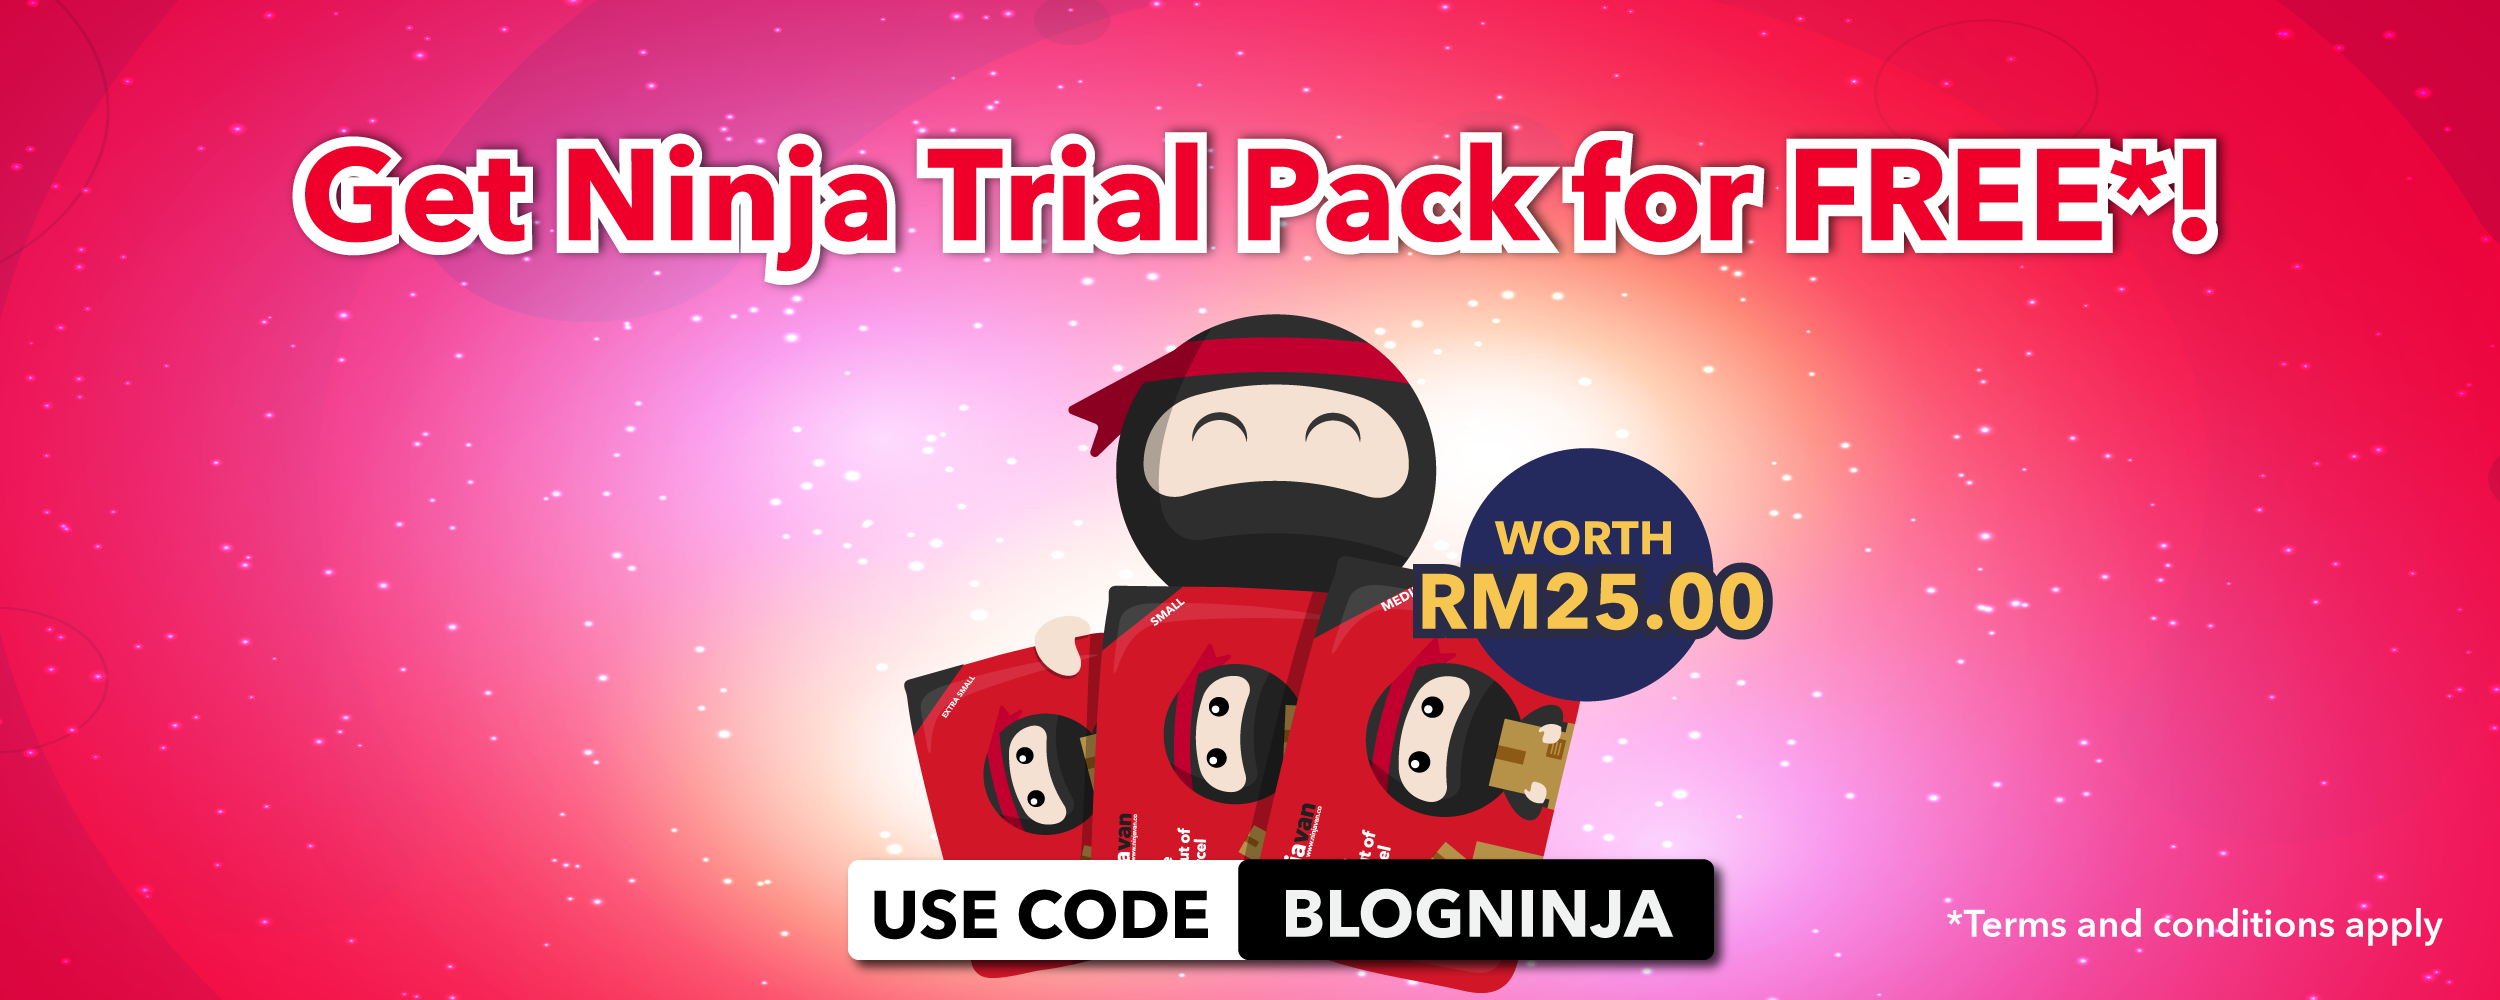 free ninja trial pack